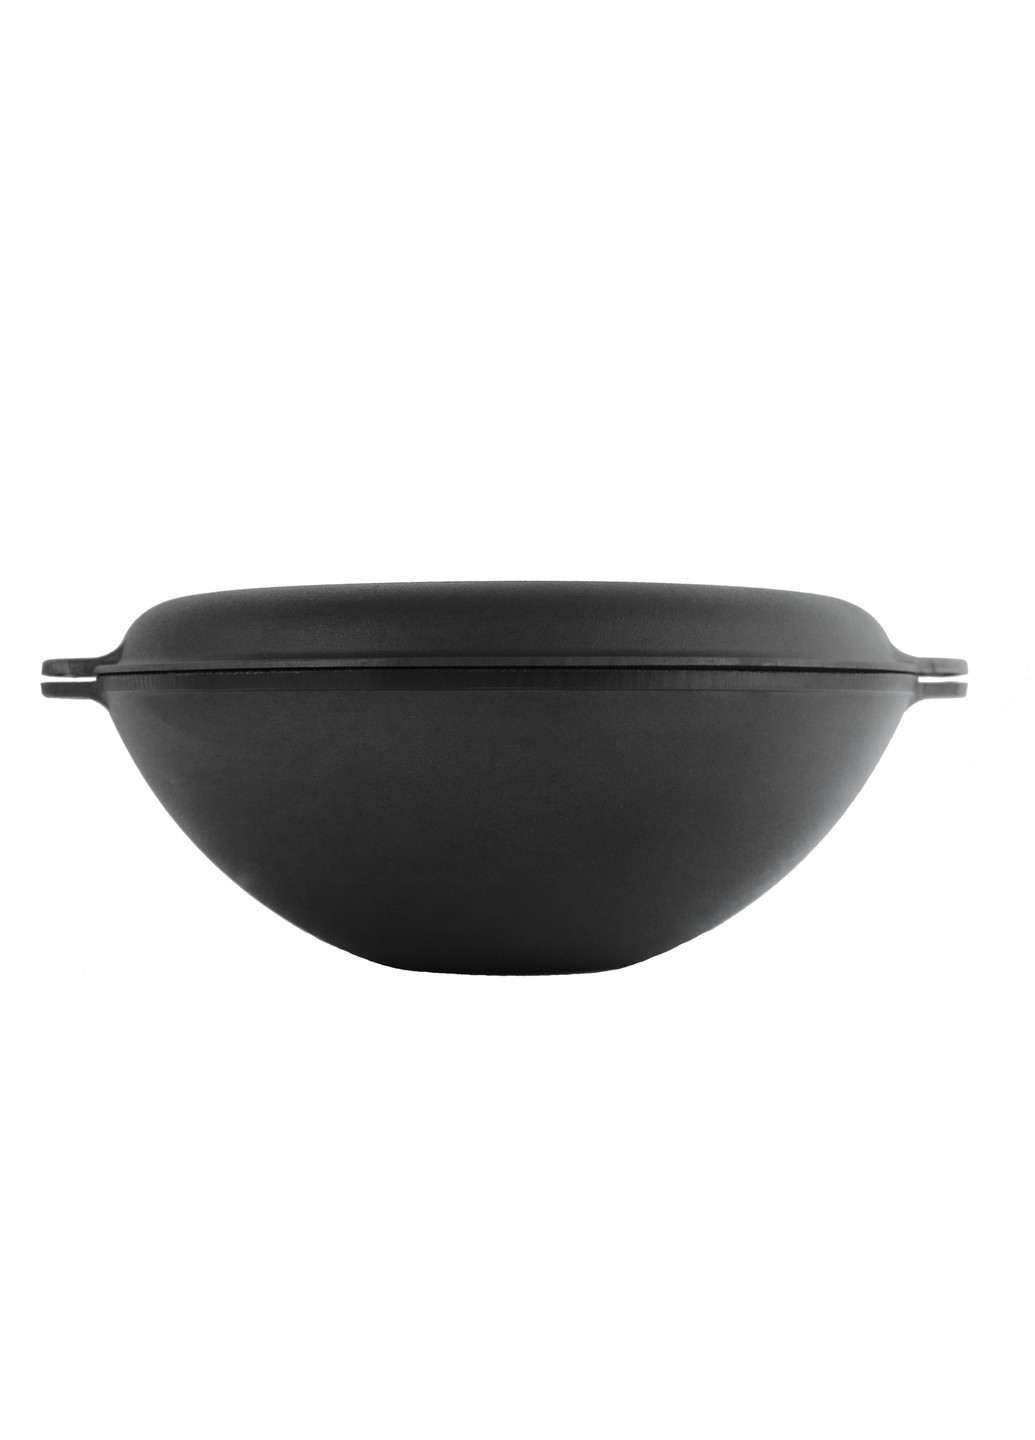 Чавунна сковорода WOK з кришкою-сковородою гриль 8 л Brizoll (276390229)